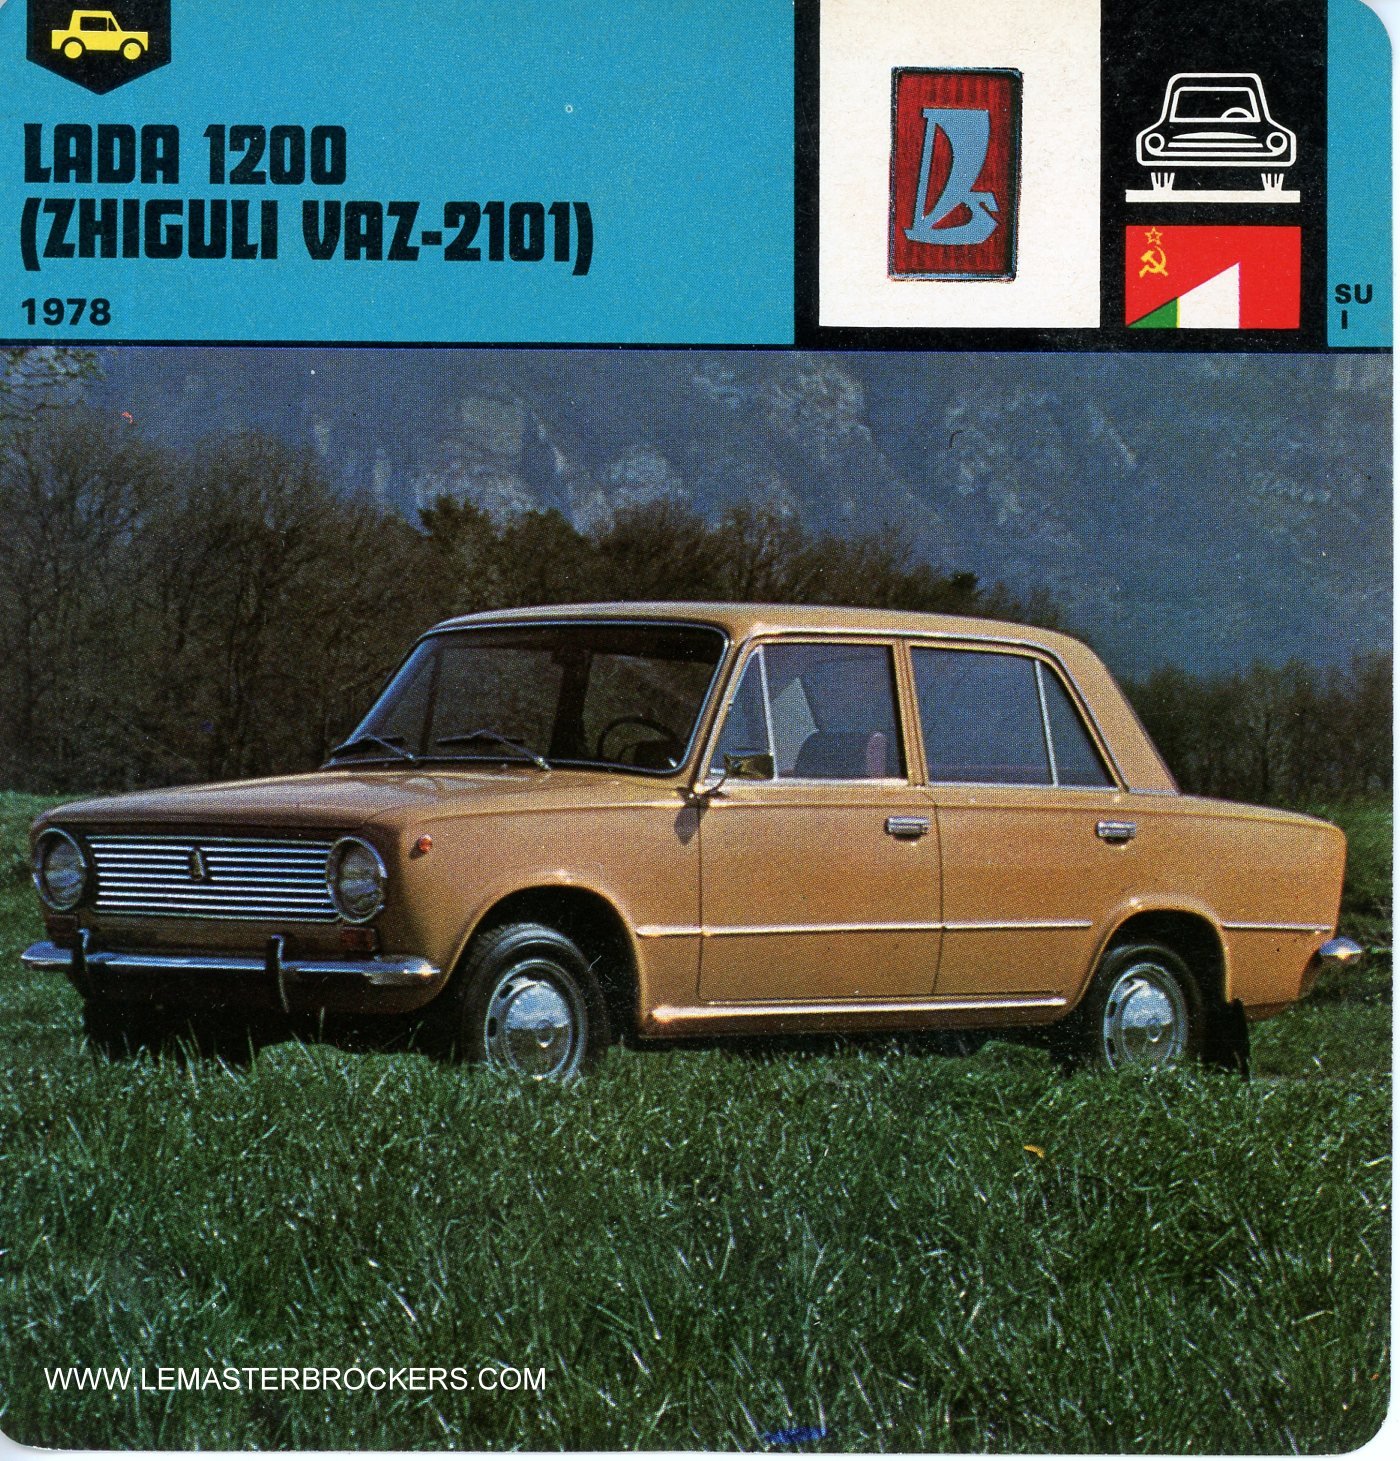 FICHE AUTO LADA 1200 ZHIGULI VAZ-2101 1978 LEMASTERBROCKERS